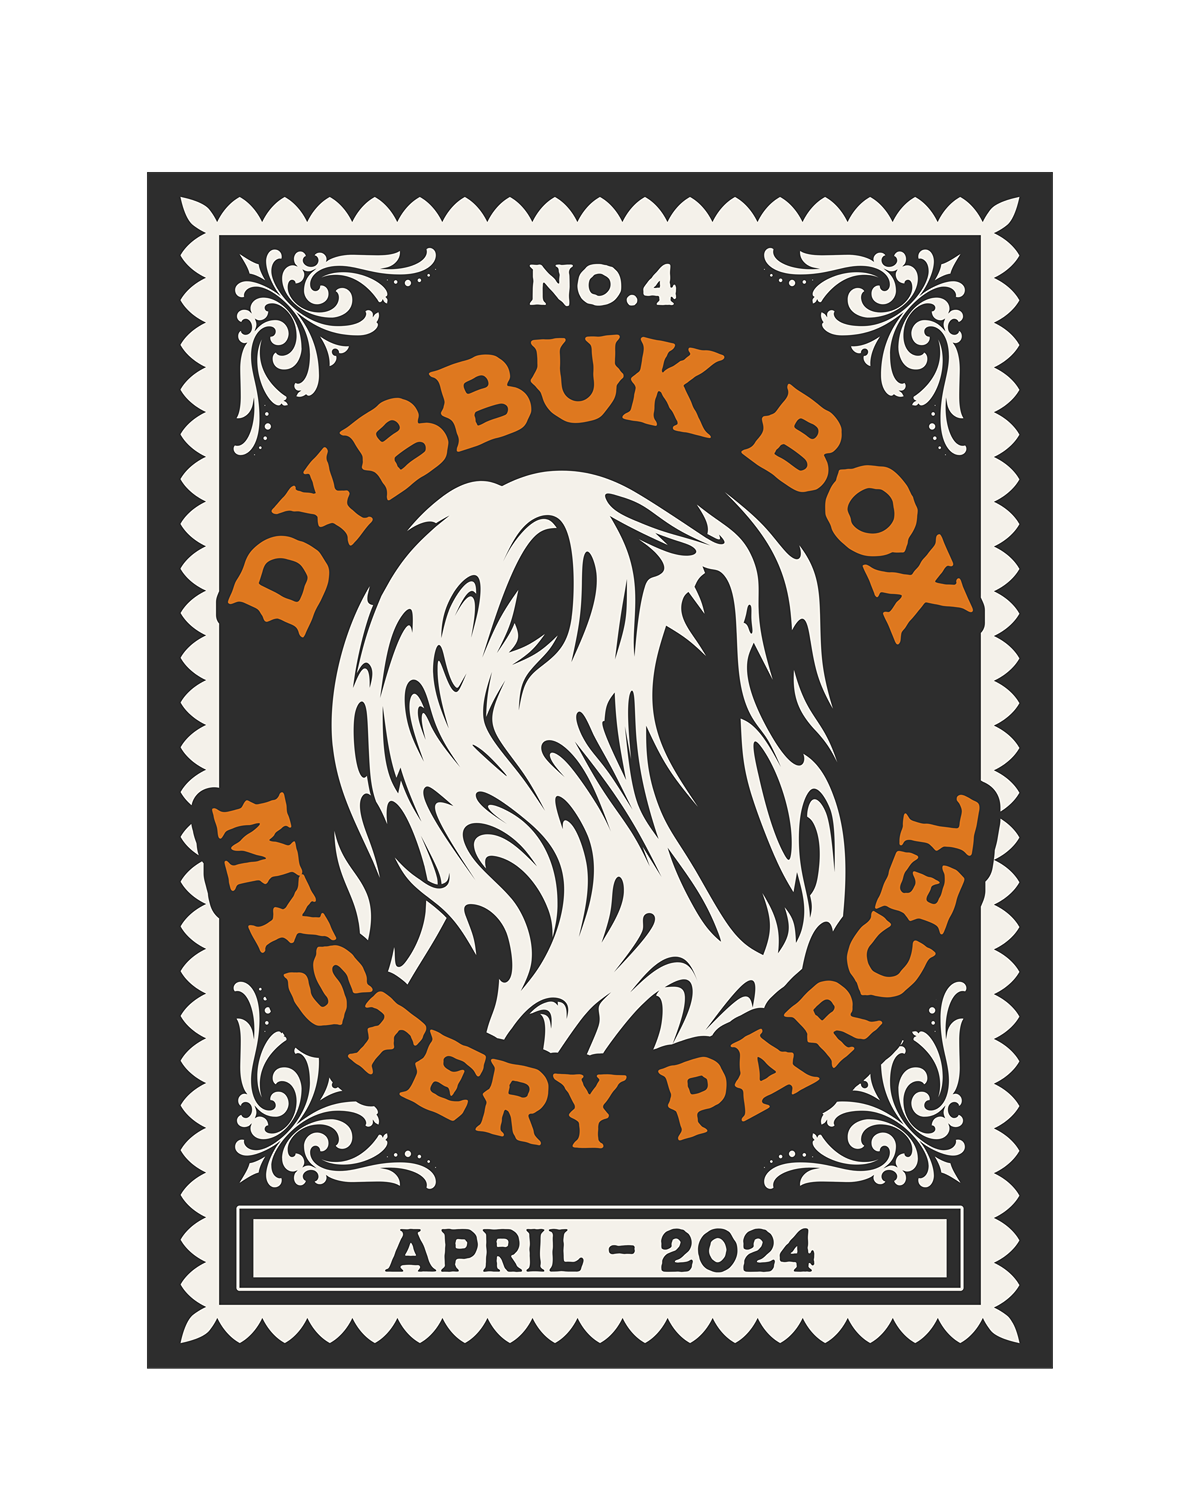 No. 4 - Dybbuk Box April 2024